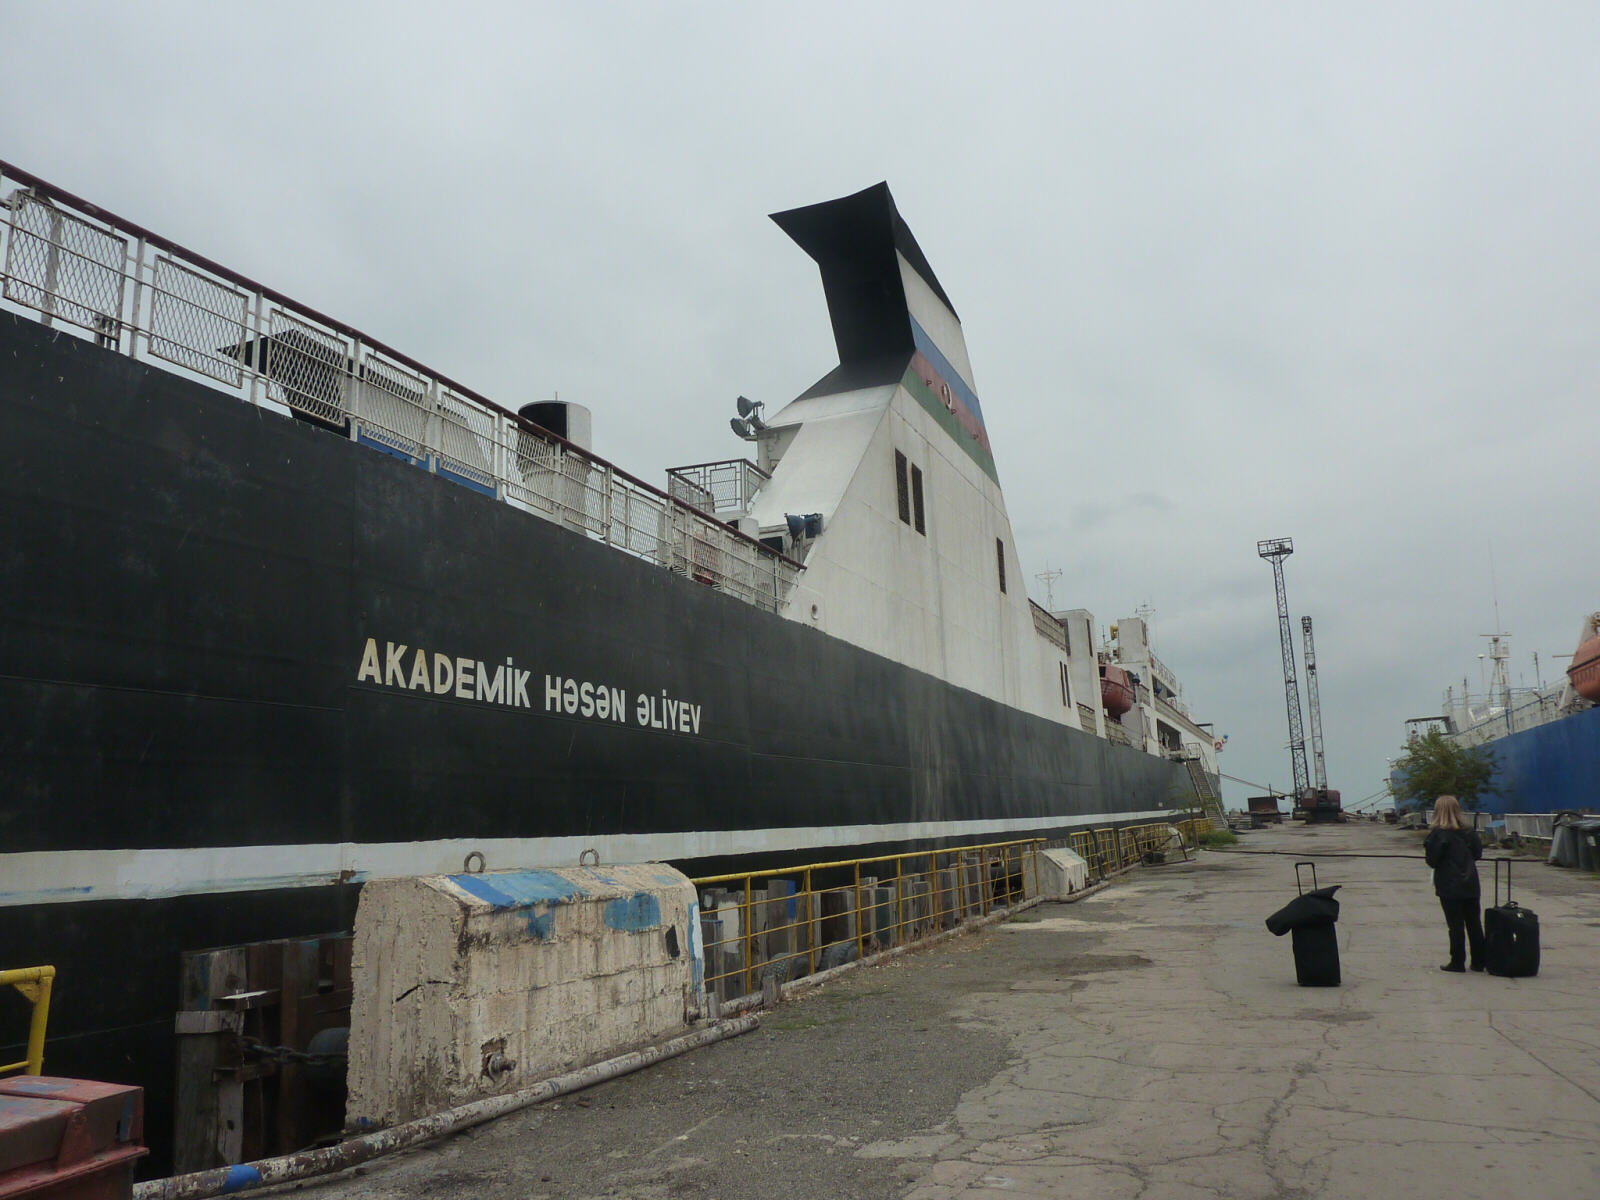 The ship Akademik Hasan Aliyev in Baku harbour, Azerbaijan